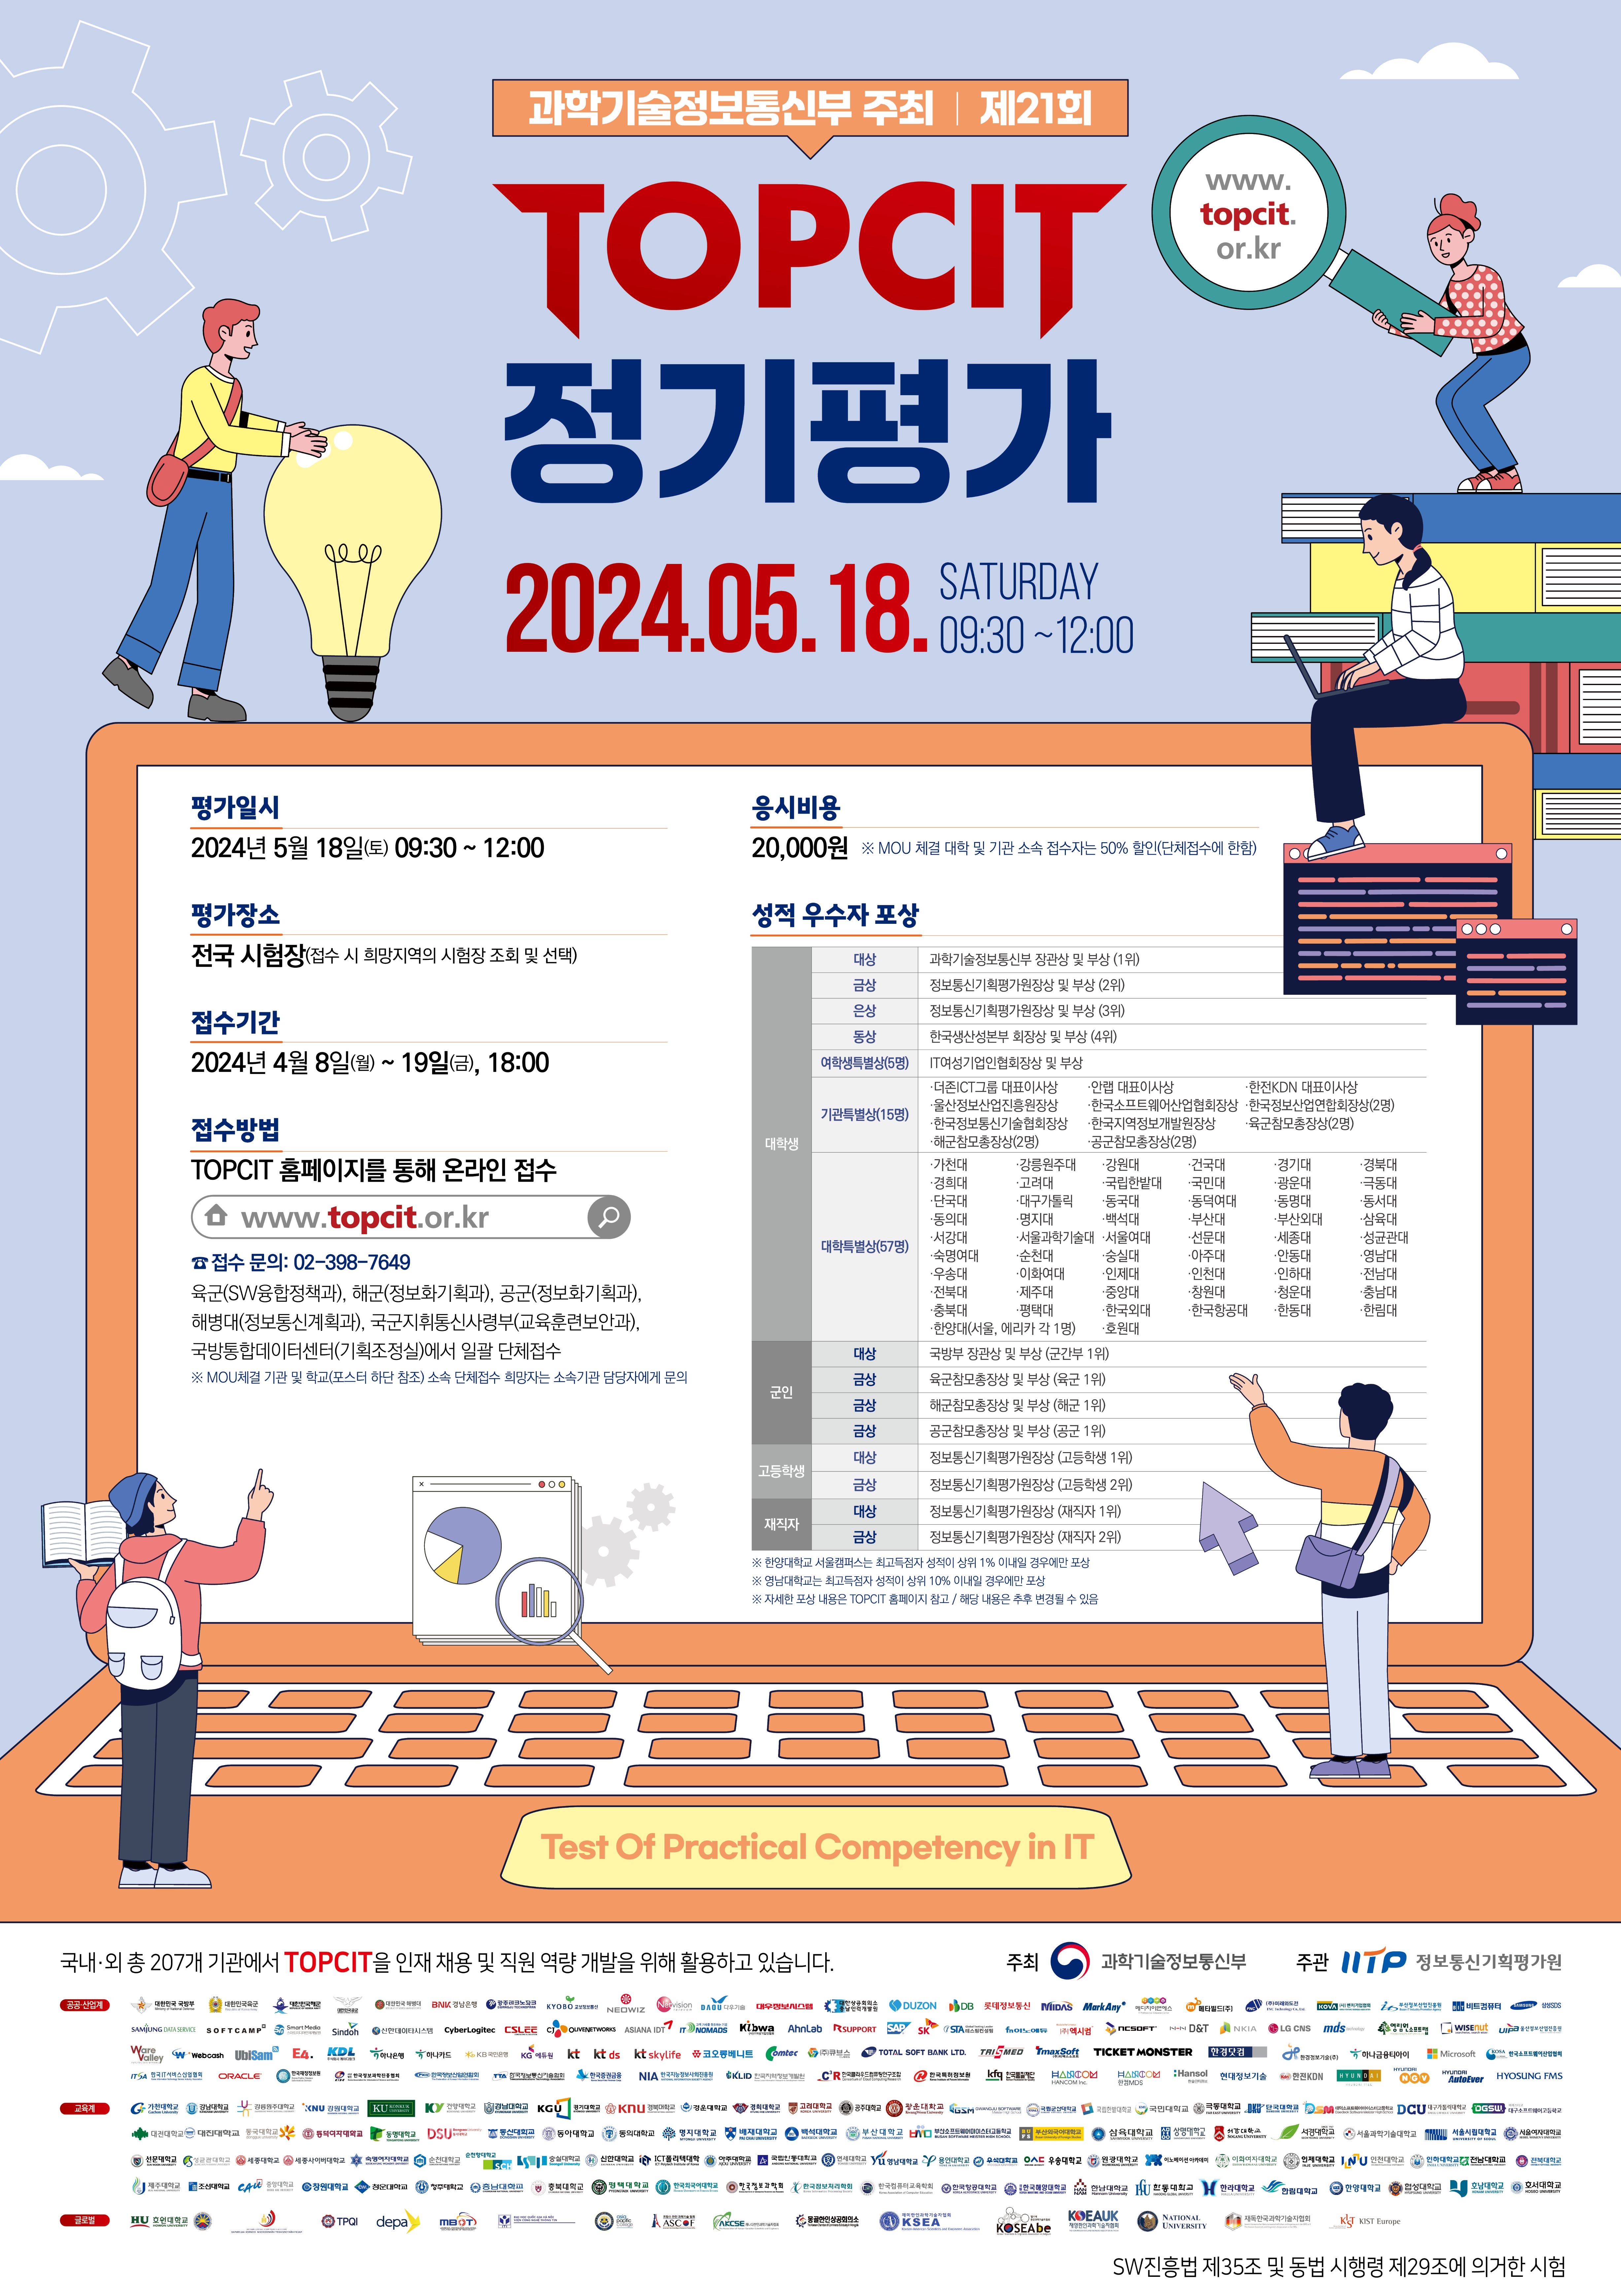 [붙임 3] 2024년 TOPCIT 제21회 정기평가 포스터